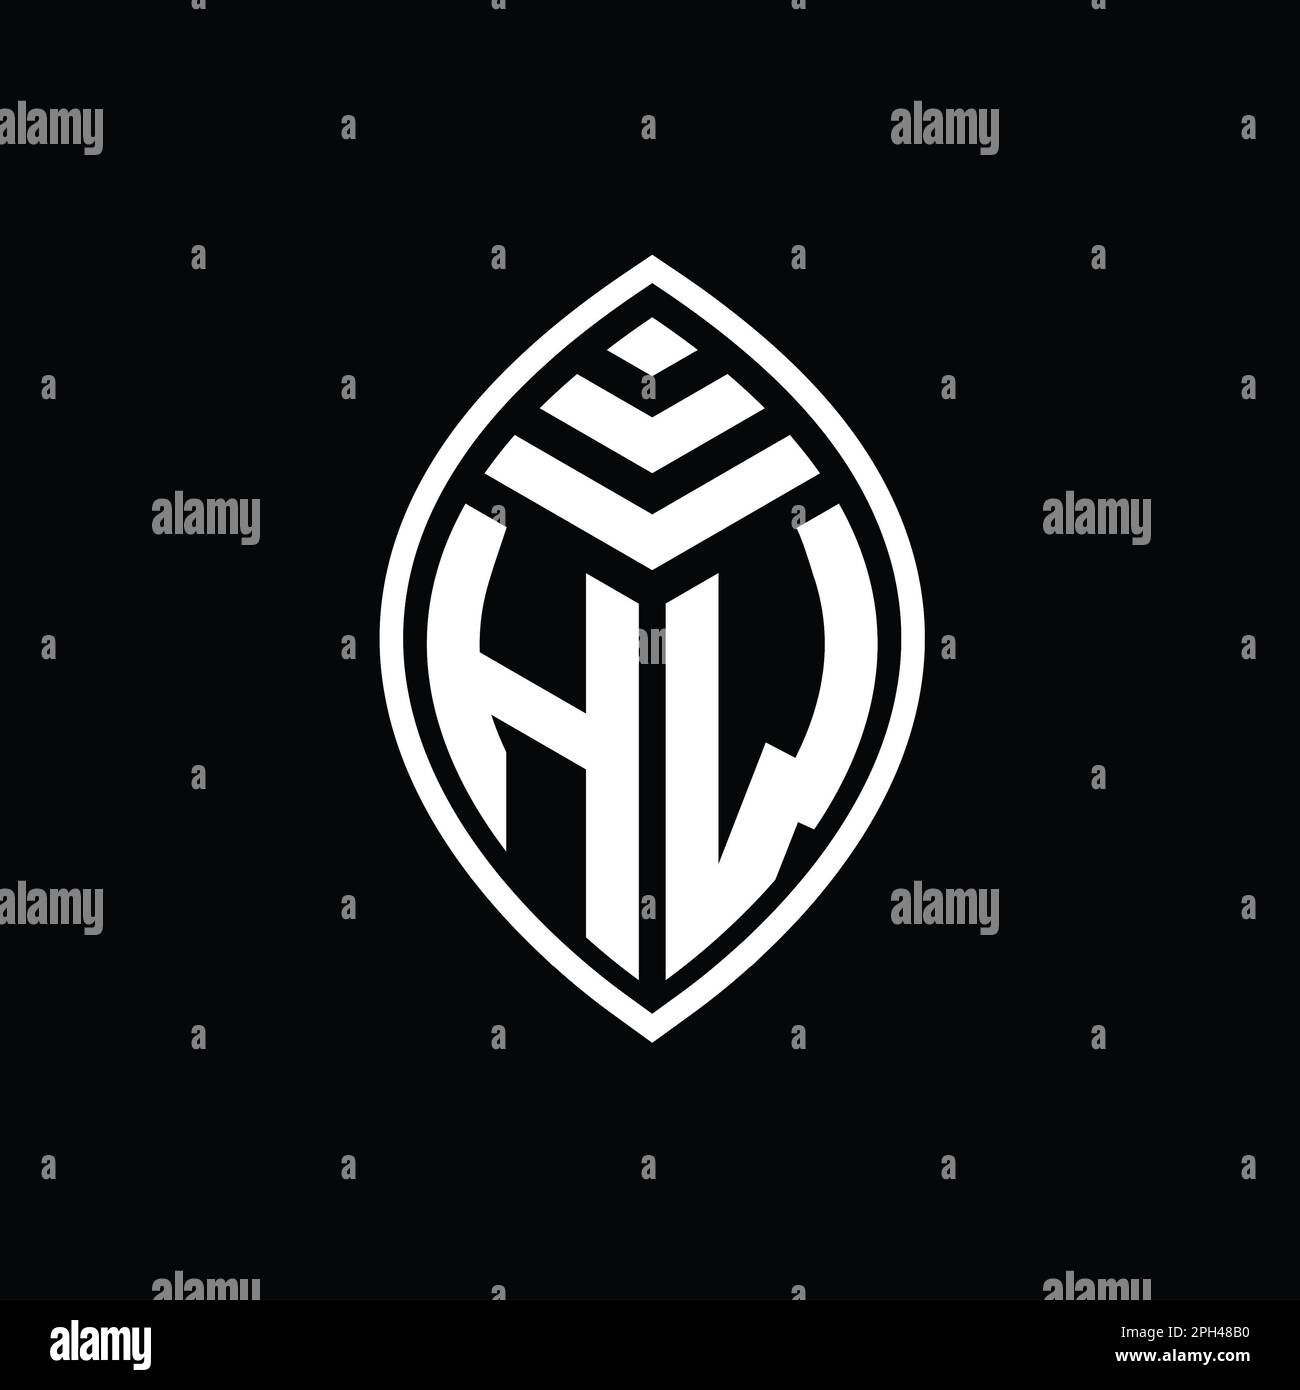 HW Monogram Logo by Abid Nion on Dribbble